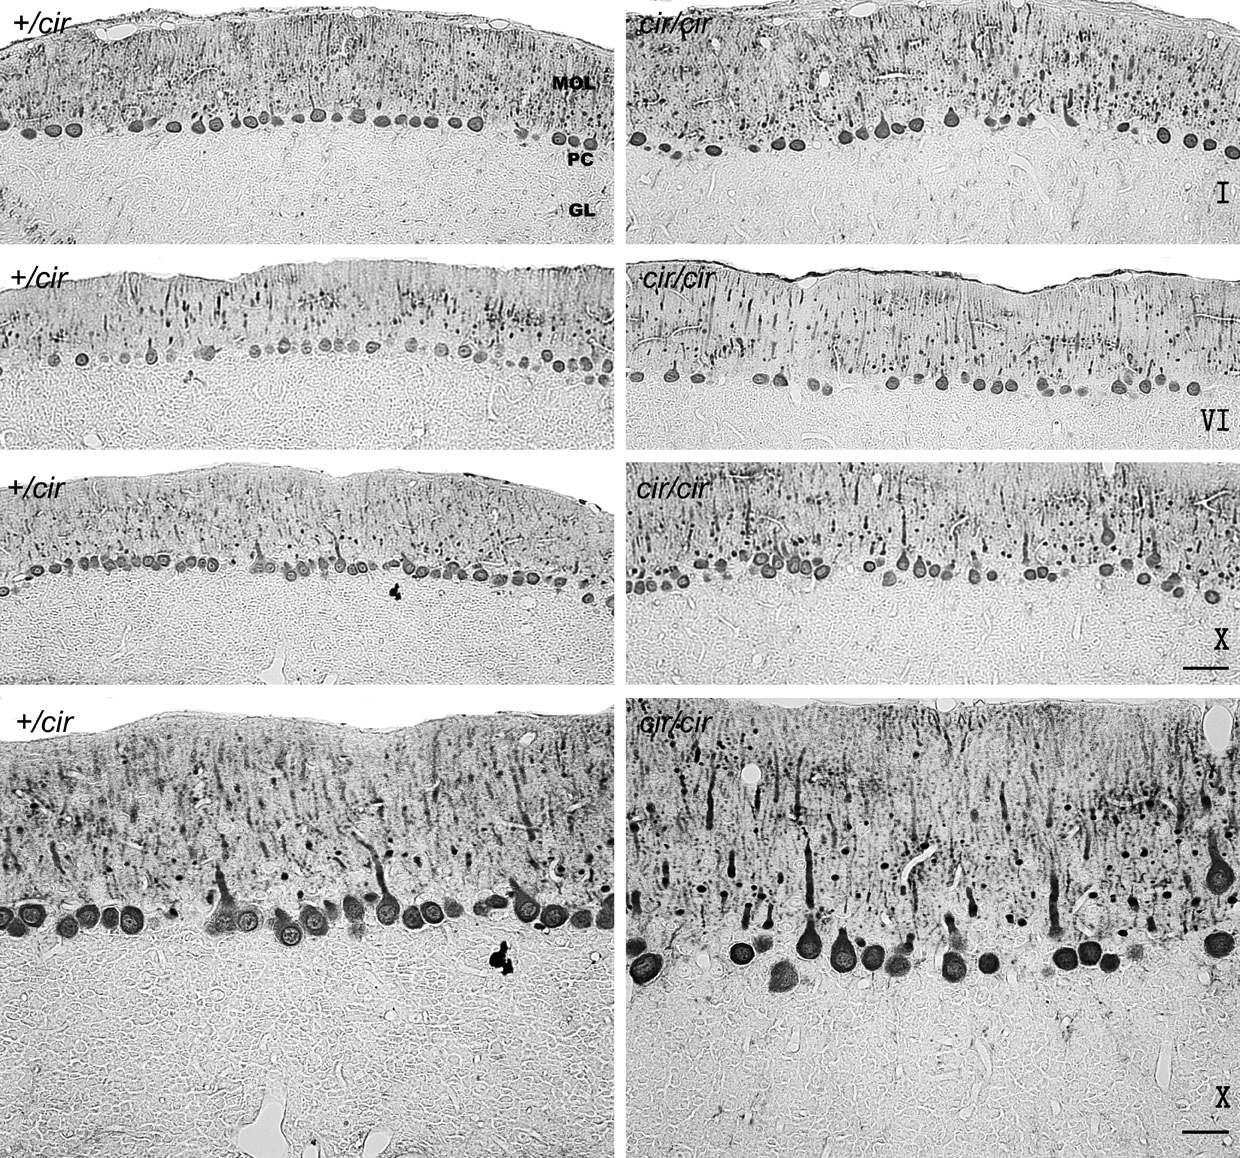 소뇌 lobule 관상단면 (I, VI 및 X번 소엽) Calbindin D-28k 면역염색사진.